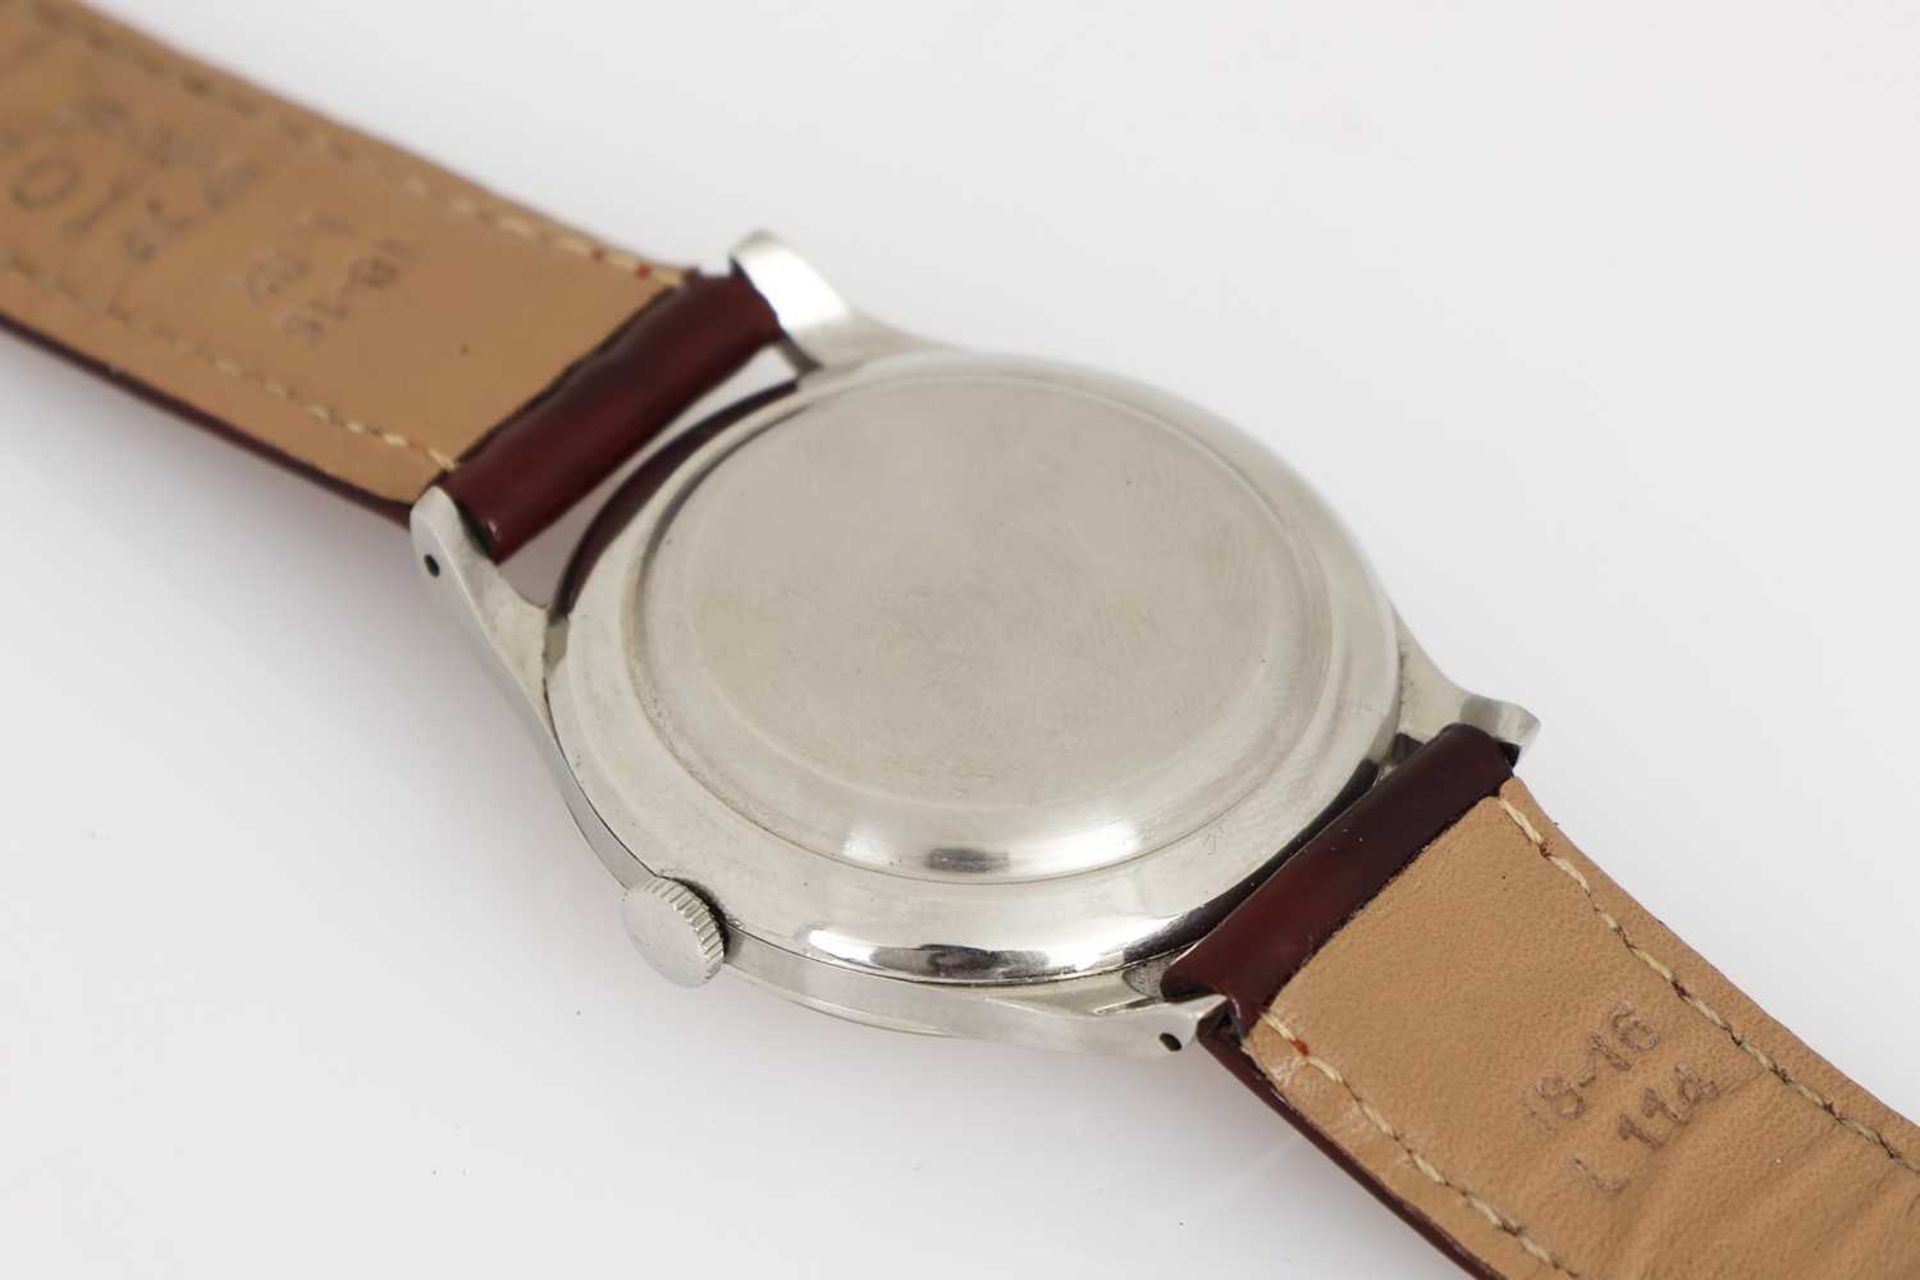 IWC (International Watch Company, Schaffhausen) Armbanduhr der 1950er Jahre - Bild 3 aus 3